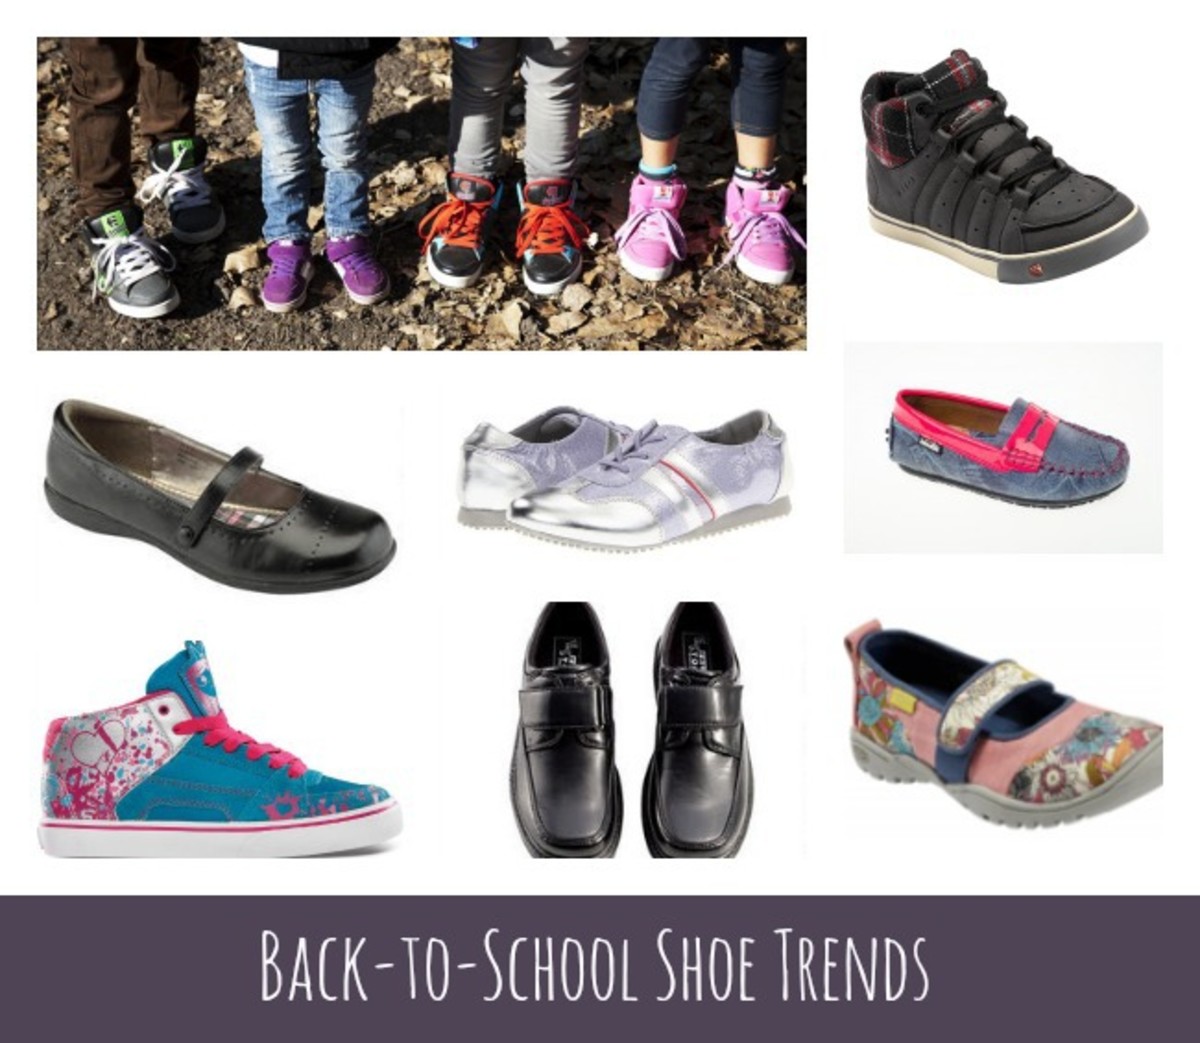 Back-to-School Shoe Trends - MomTrends